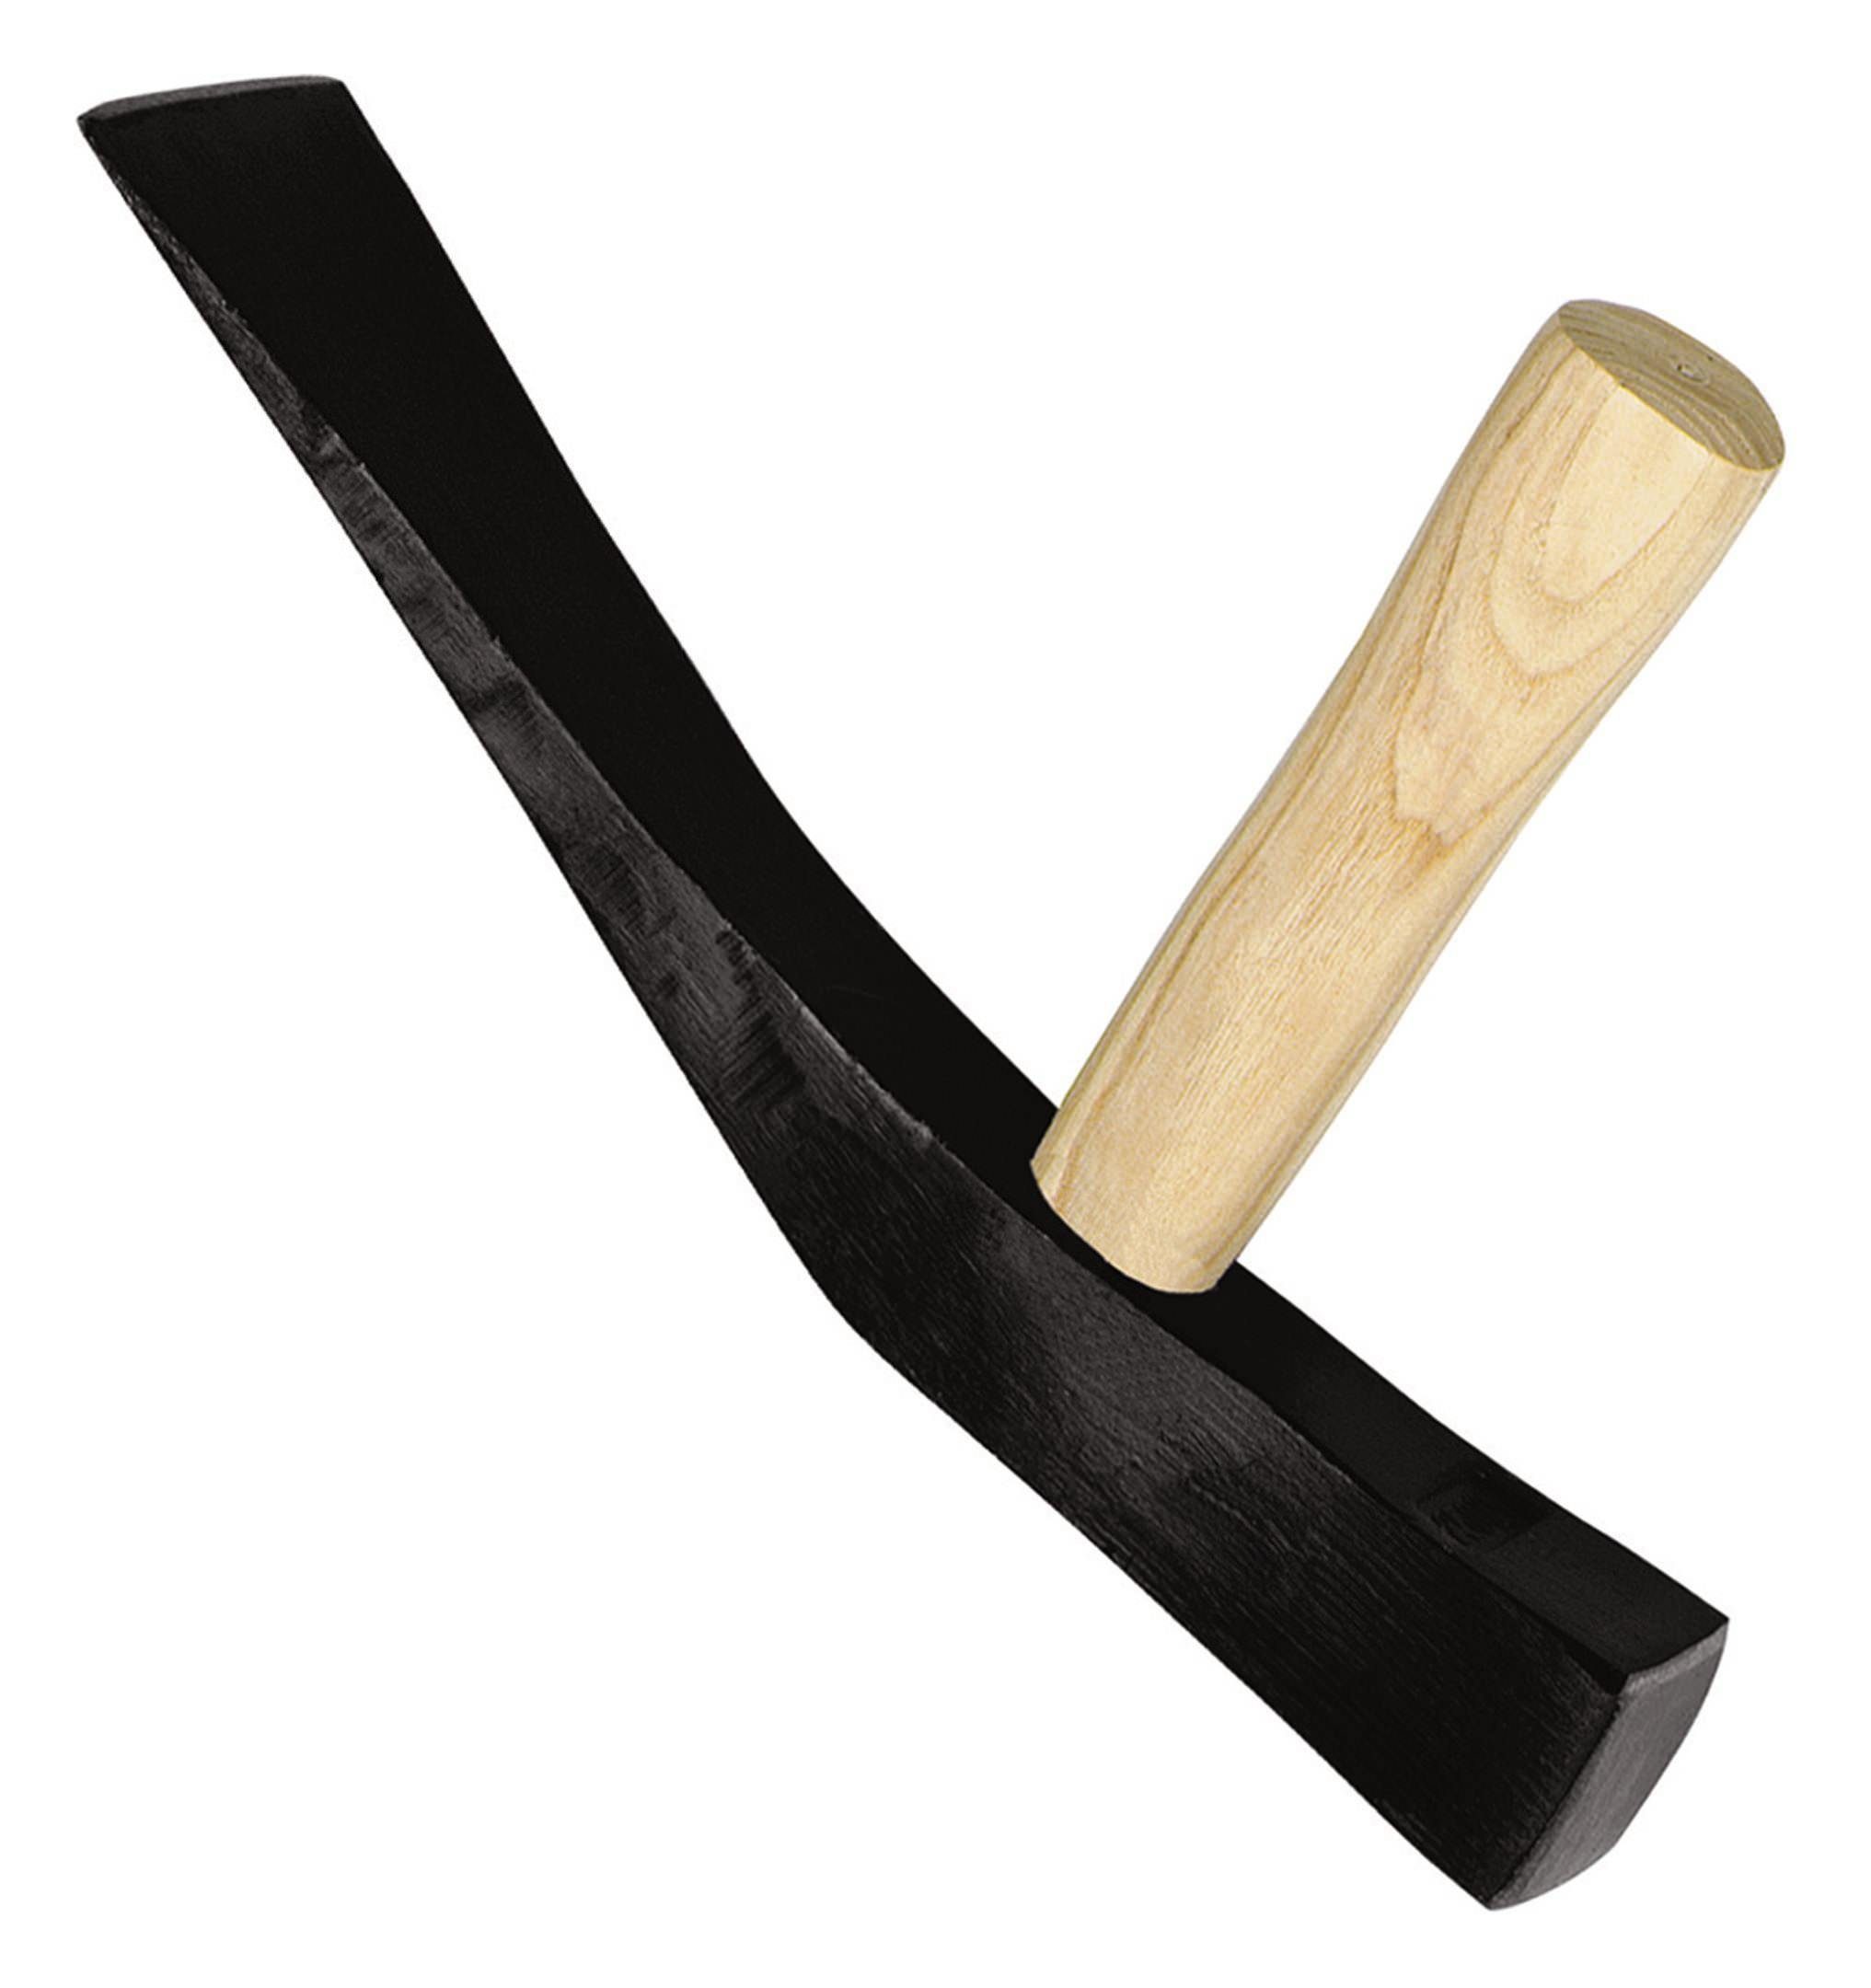 IDEALSPATEN Hammer, Pflasterhammer 1500g rheinische Form